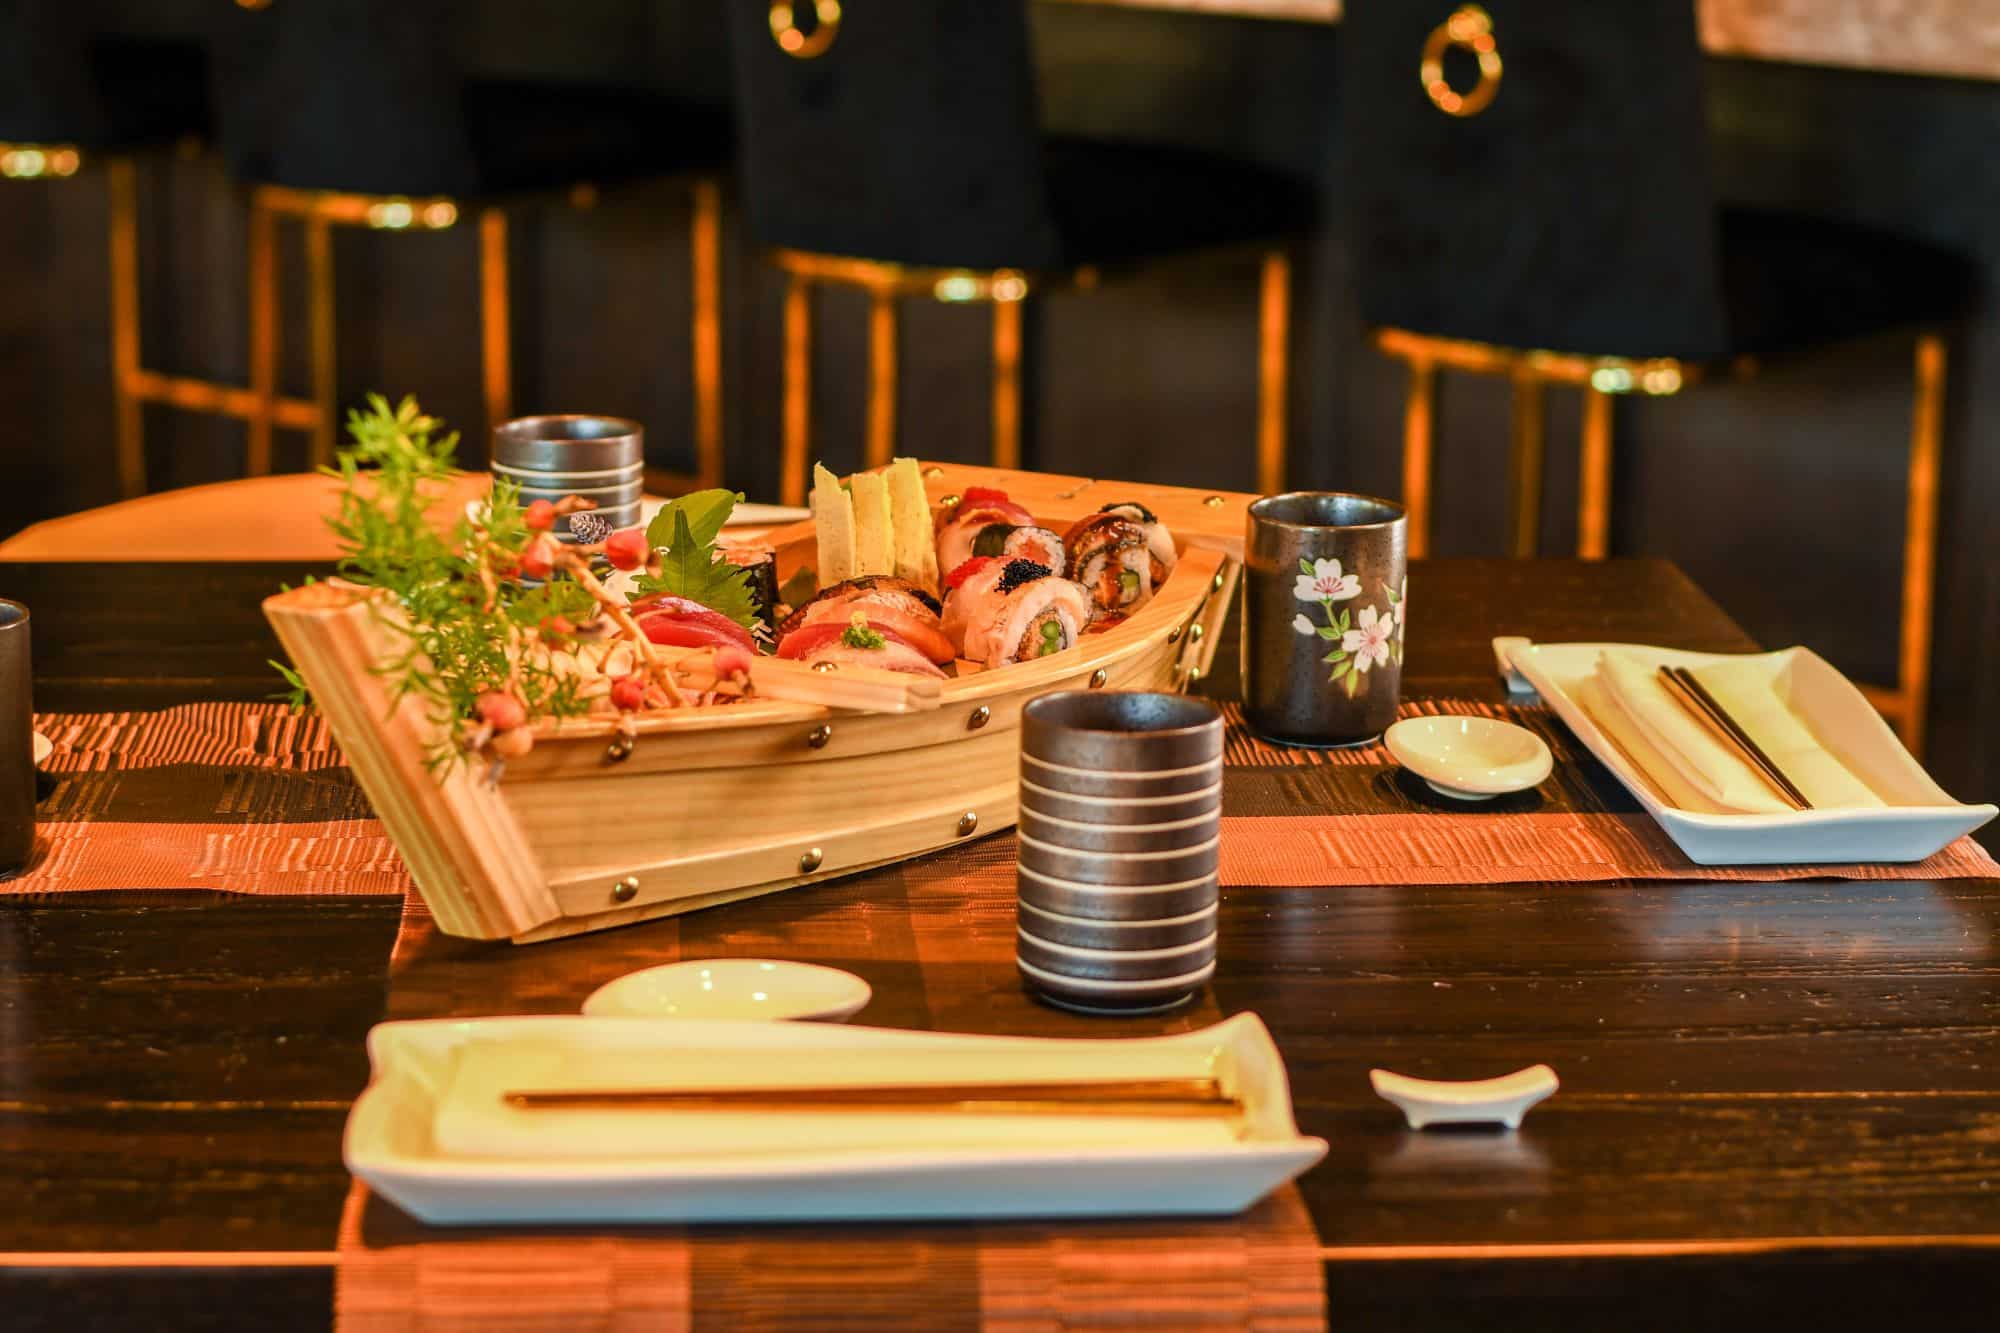 Fresh sushi served at Finjin sushi bar.